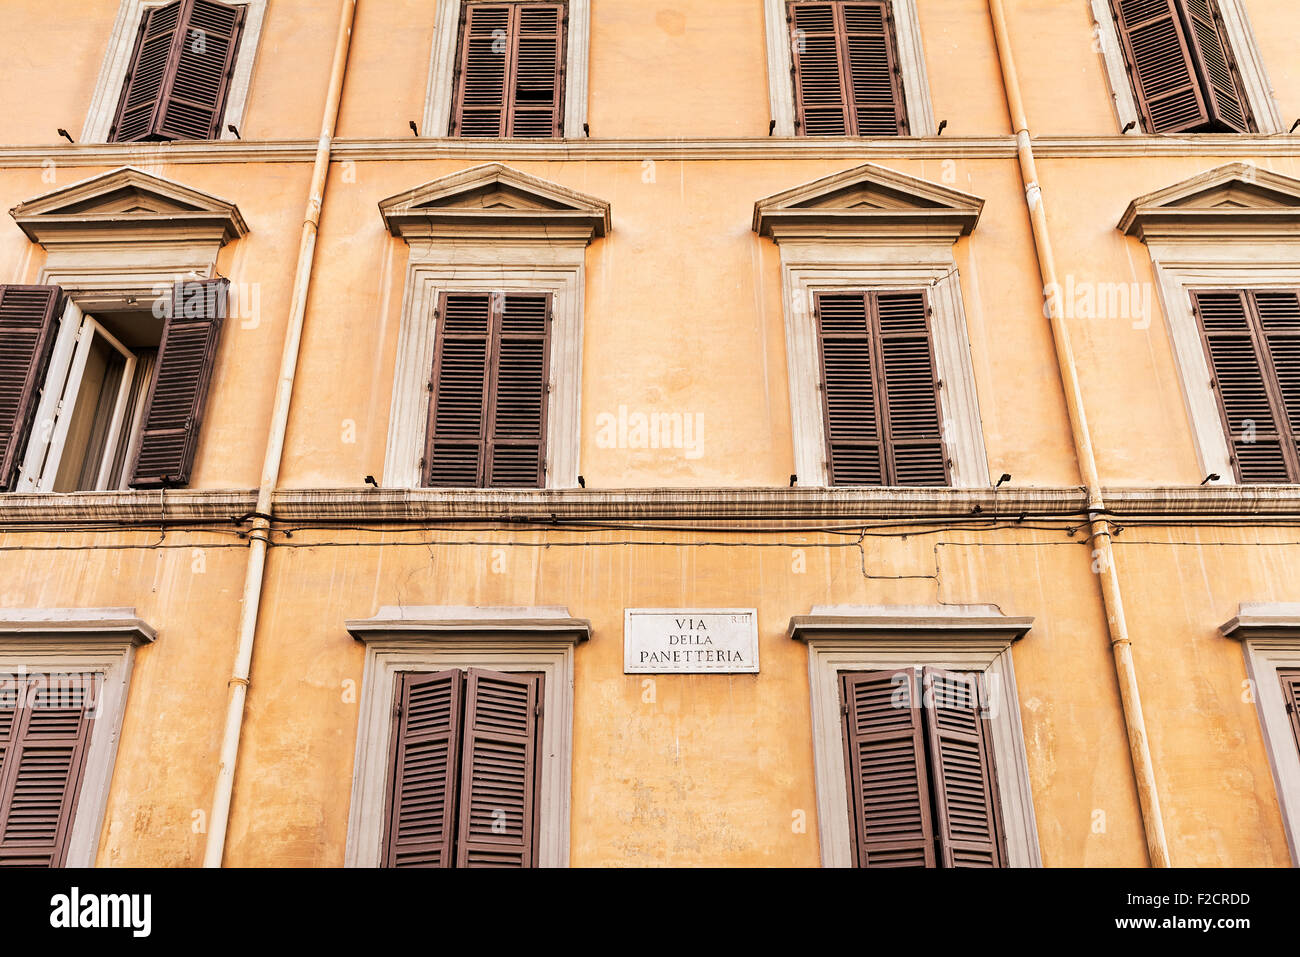 Vieux bâtiment coloré avec des fenêtres à volets, Rome, Italie Banque D'Images